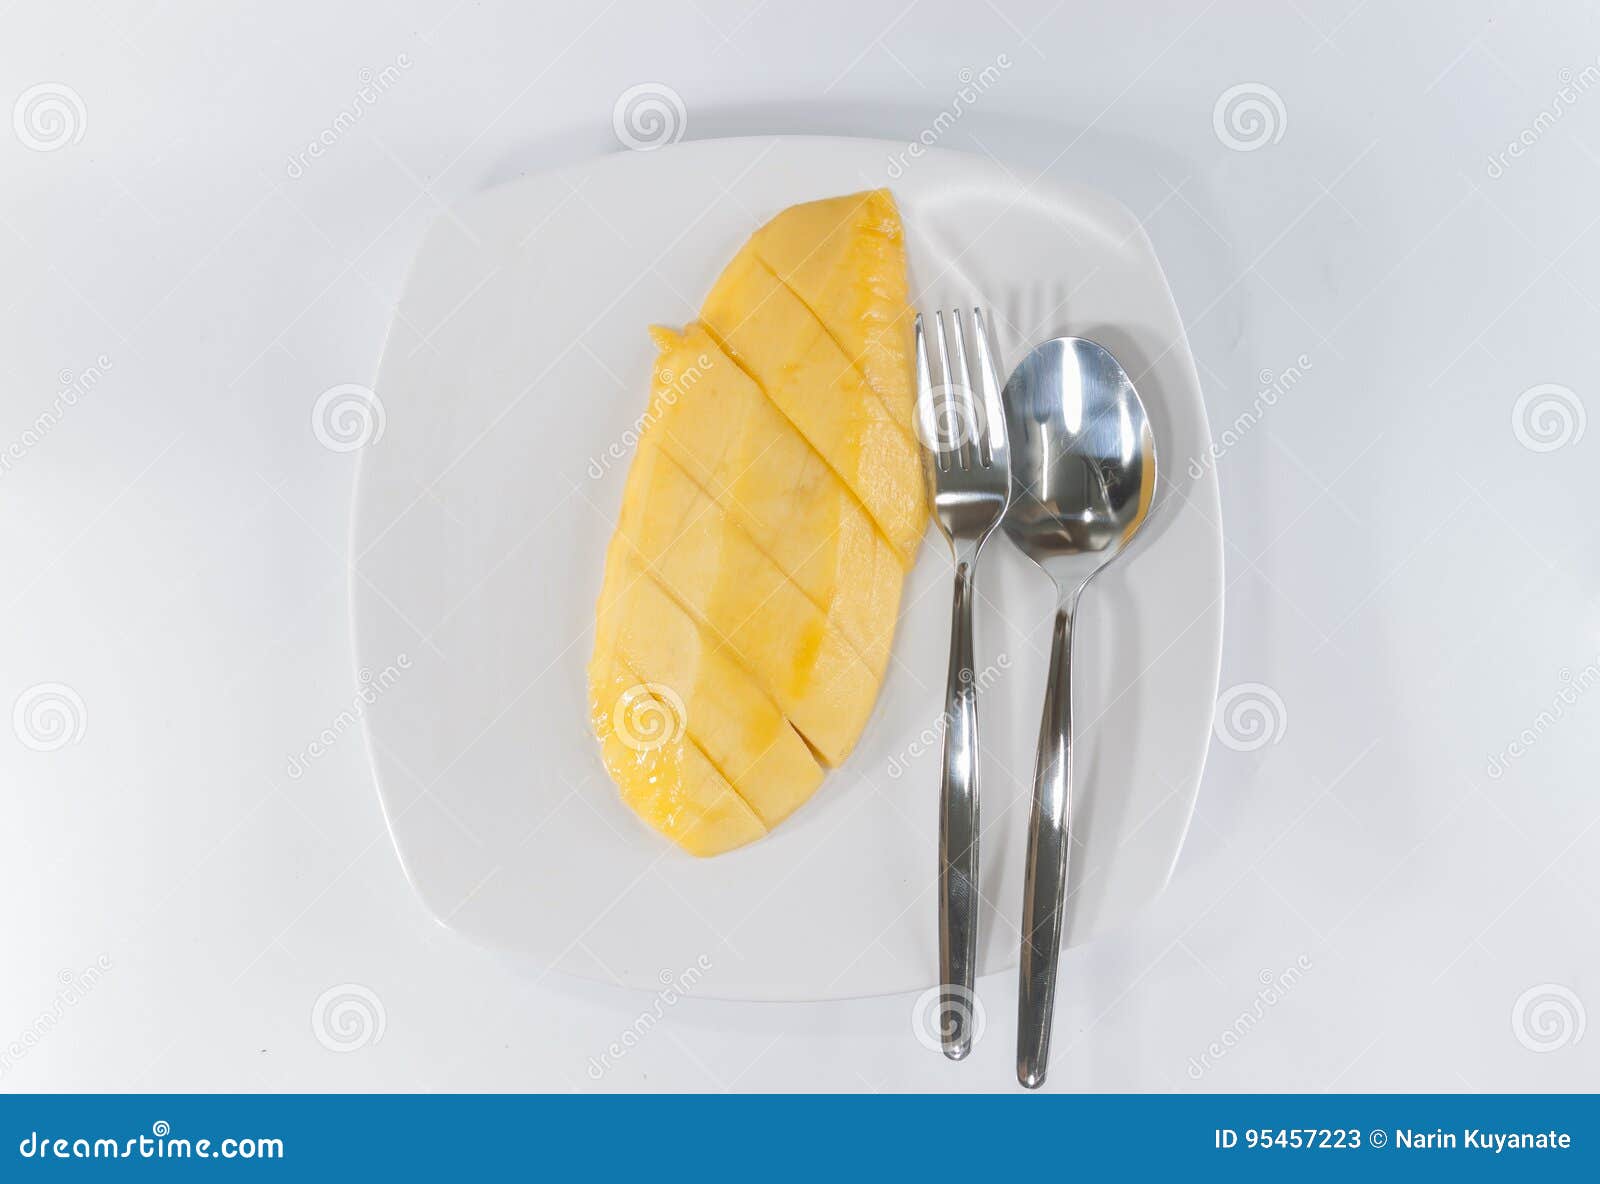 Mangoscheibe auf weißem Teller